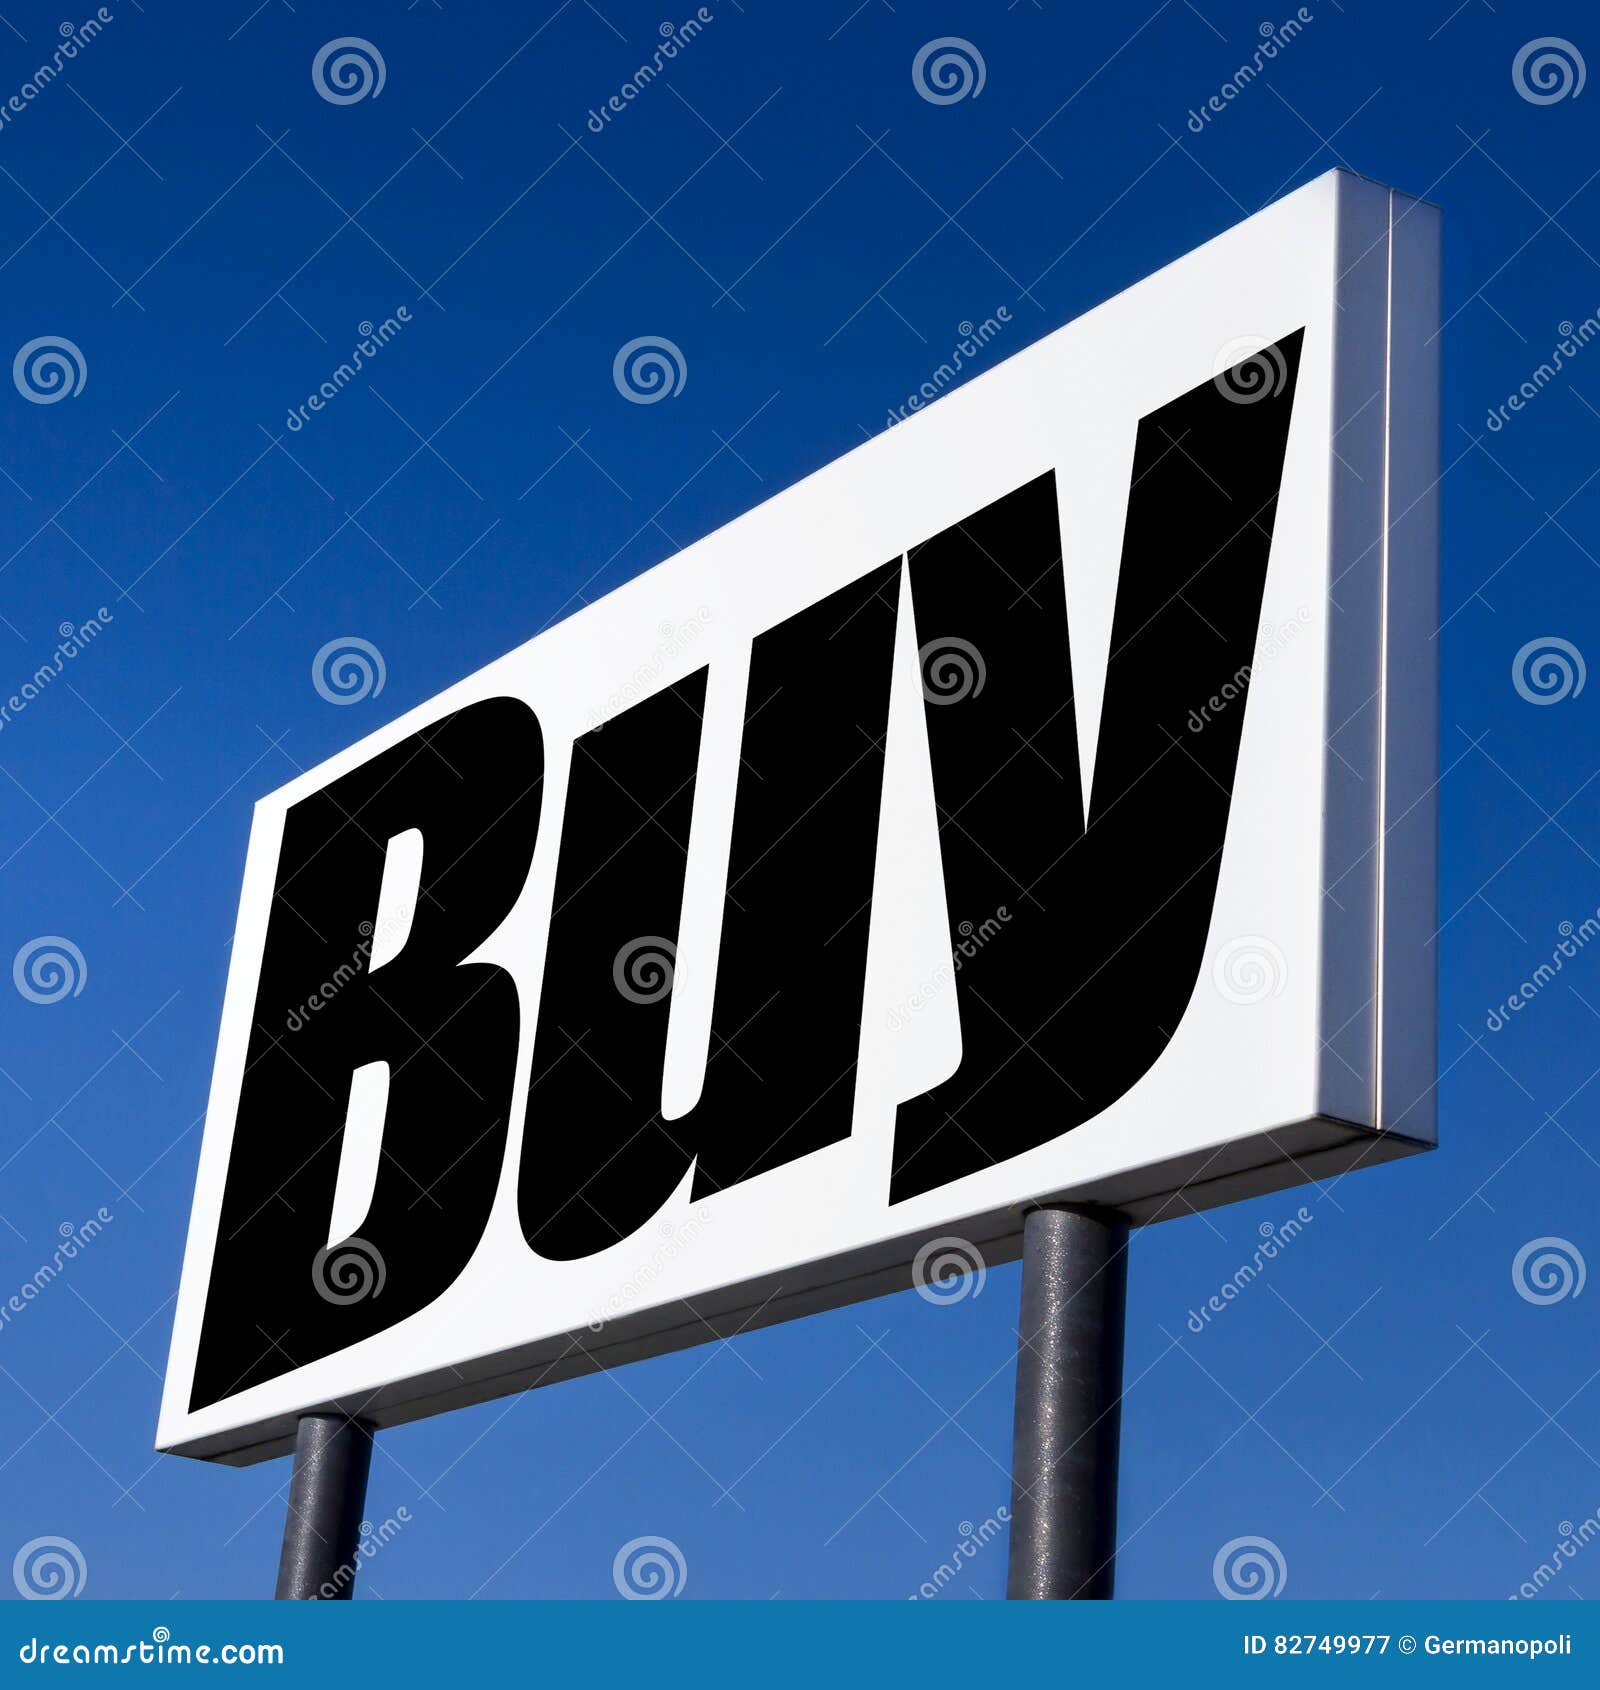 î€€Buyî€, î€€buyî€ and î€€buyî€ stock image. Image of sign, banking - 82749977